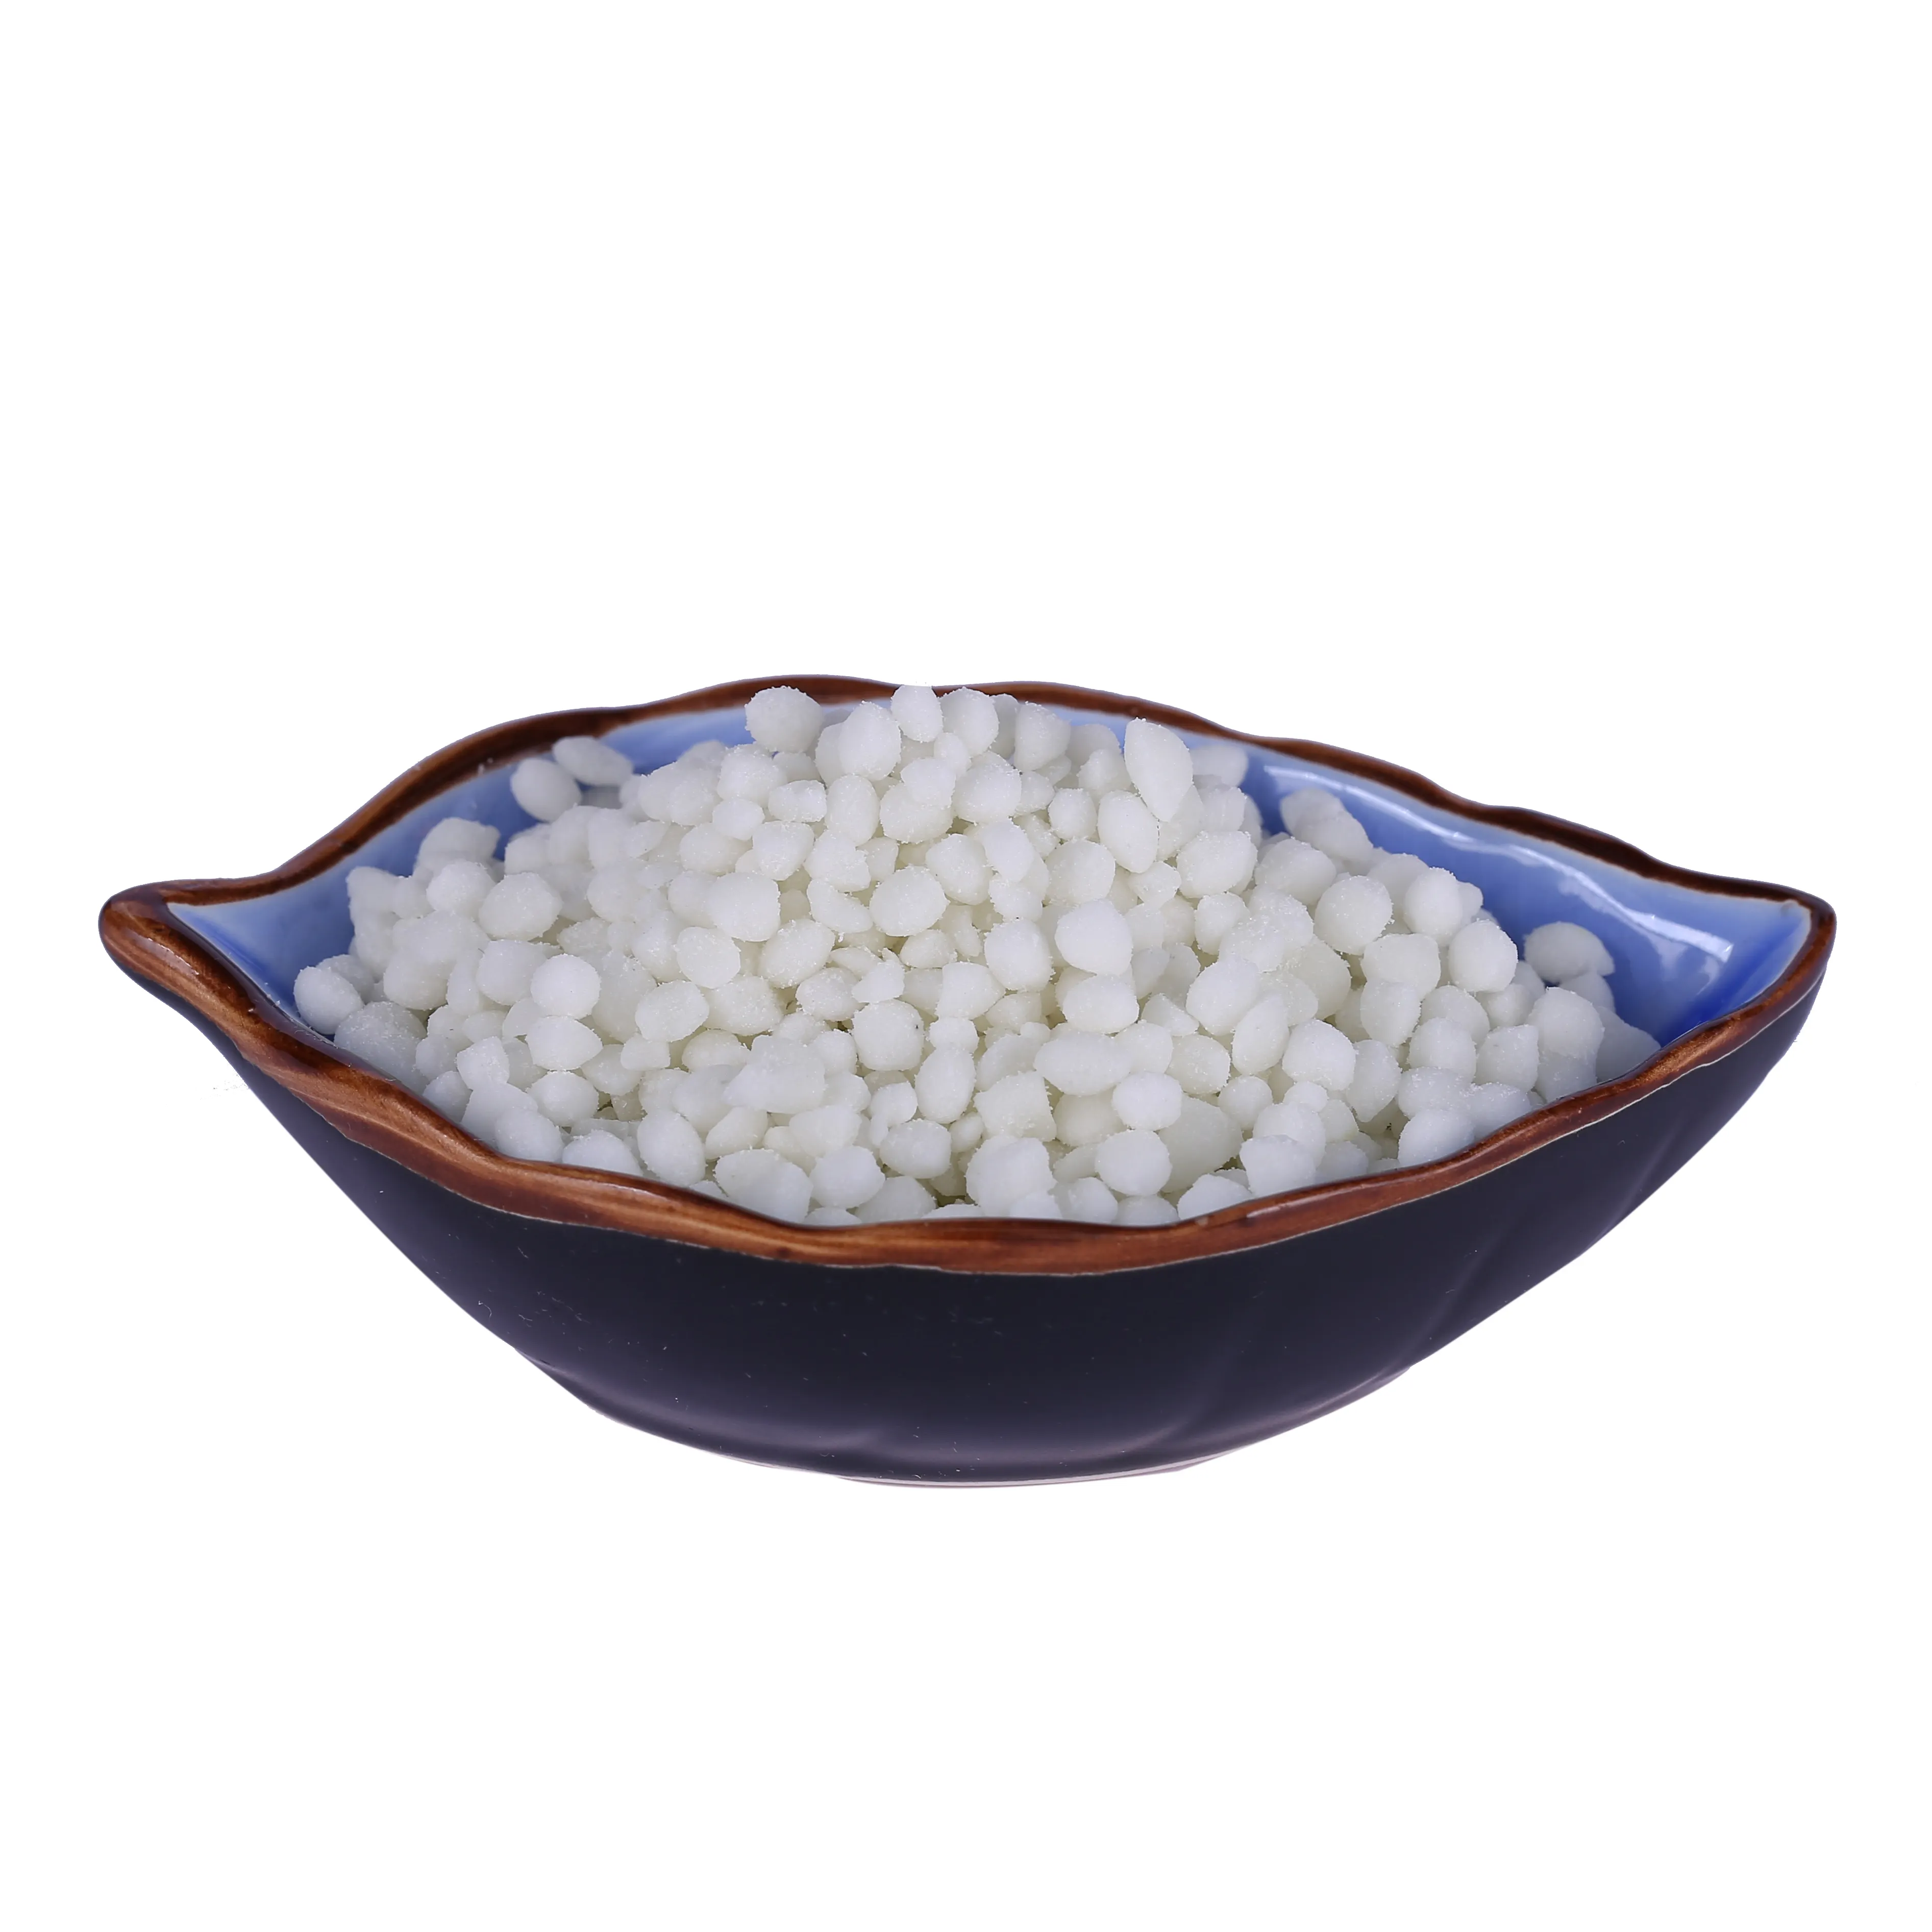 Fertilizante granular branco de nitrogênio, amônio, sulfato, fertilizante granular, % 2